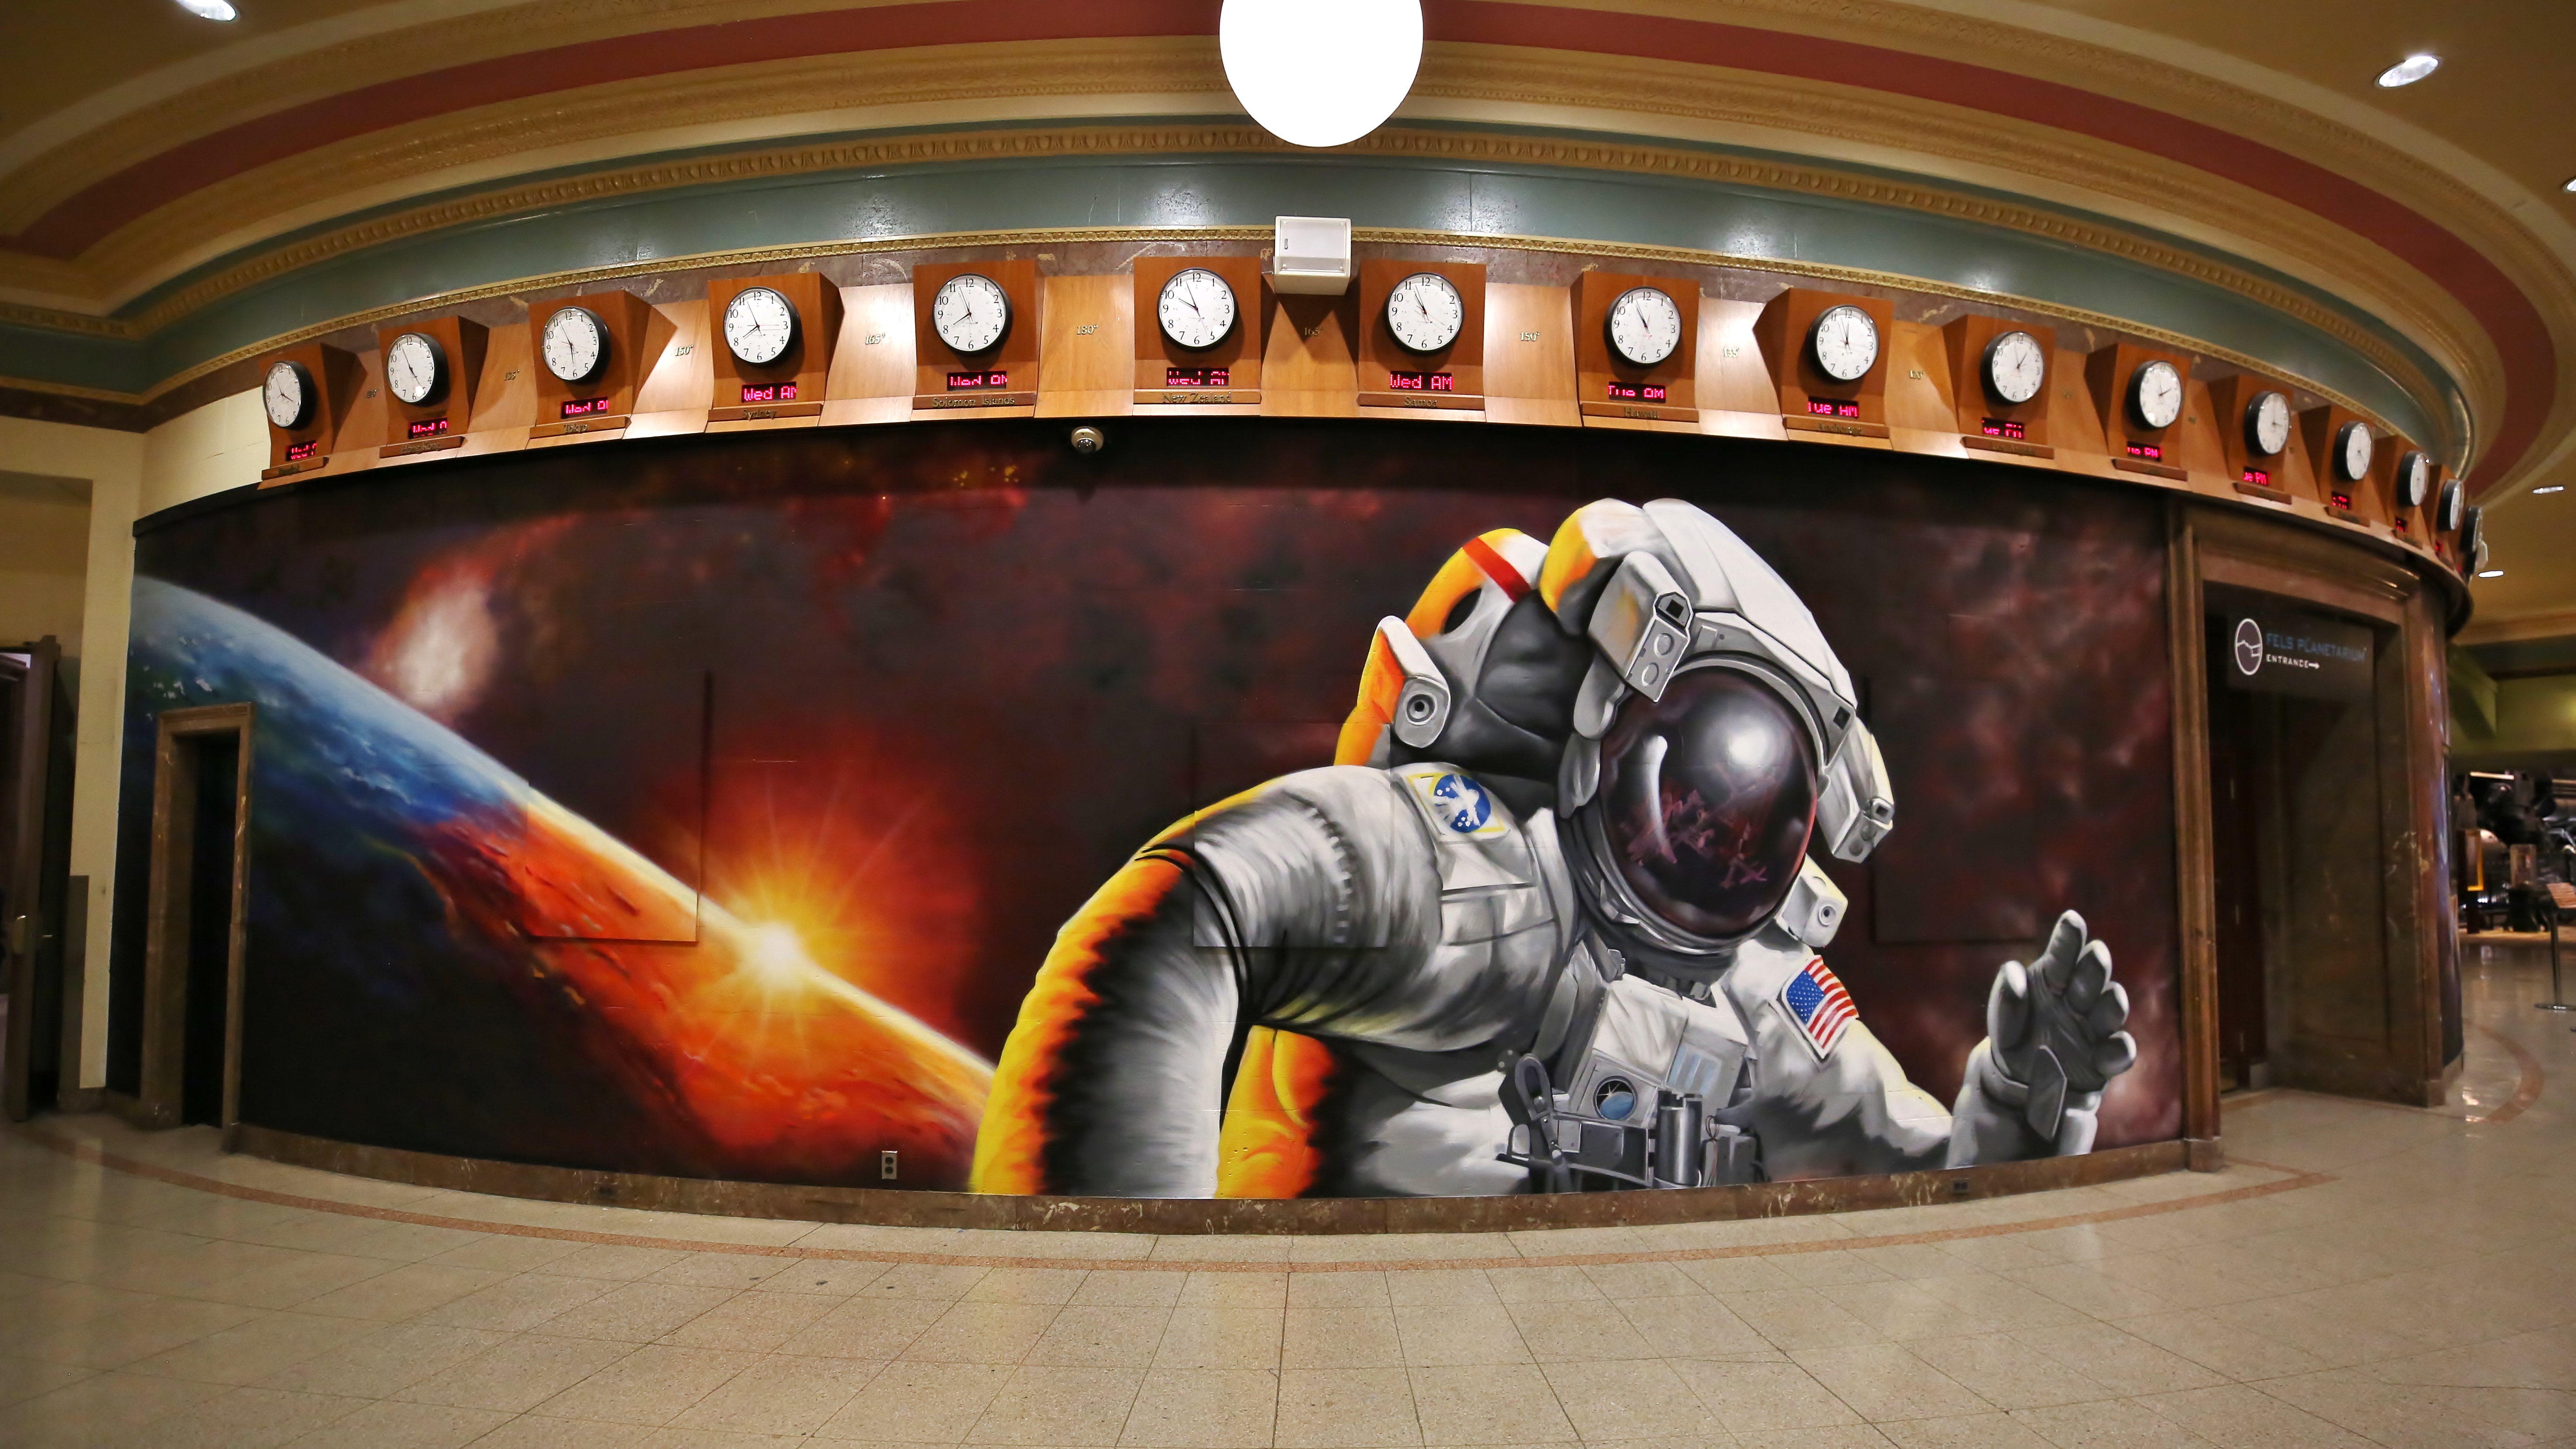 Planetarium Hallway Mural 